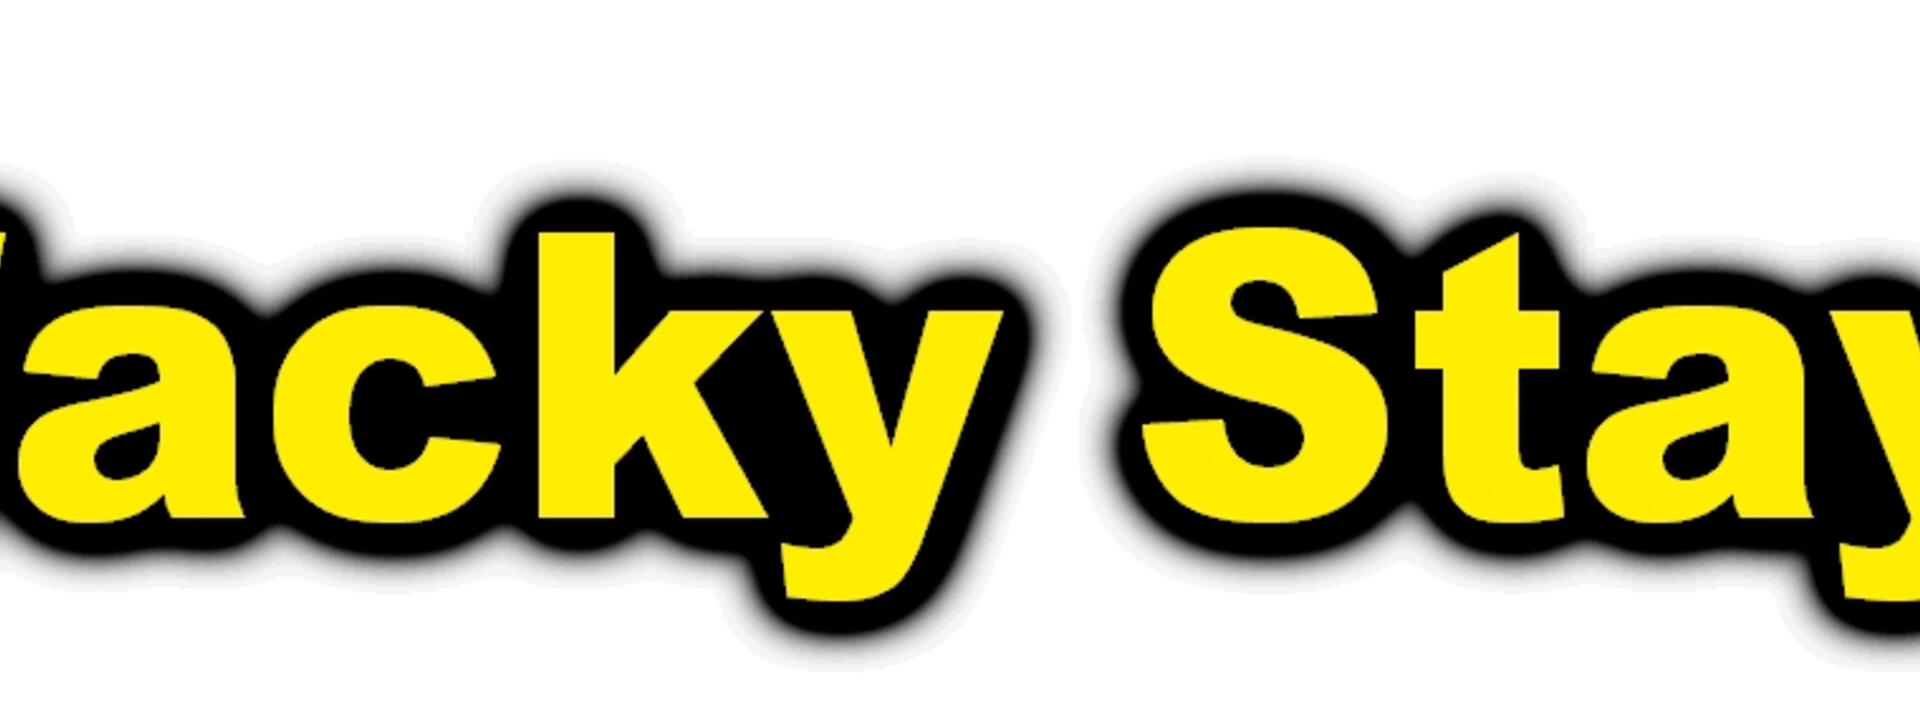 Wacky Stays logo.jpg